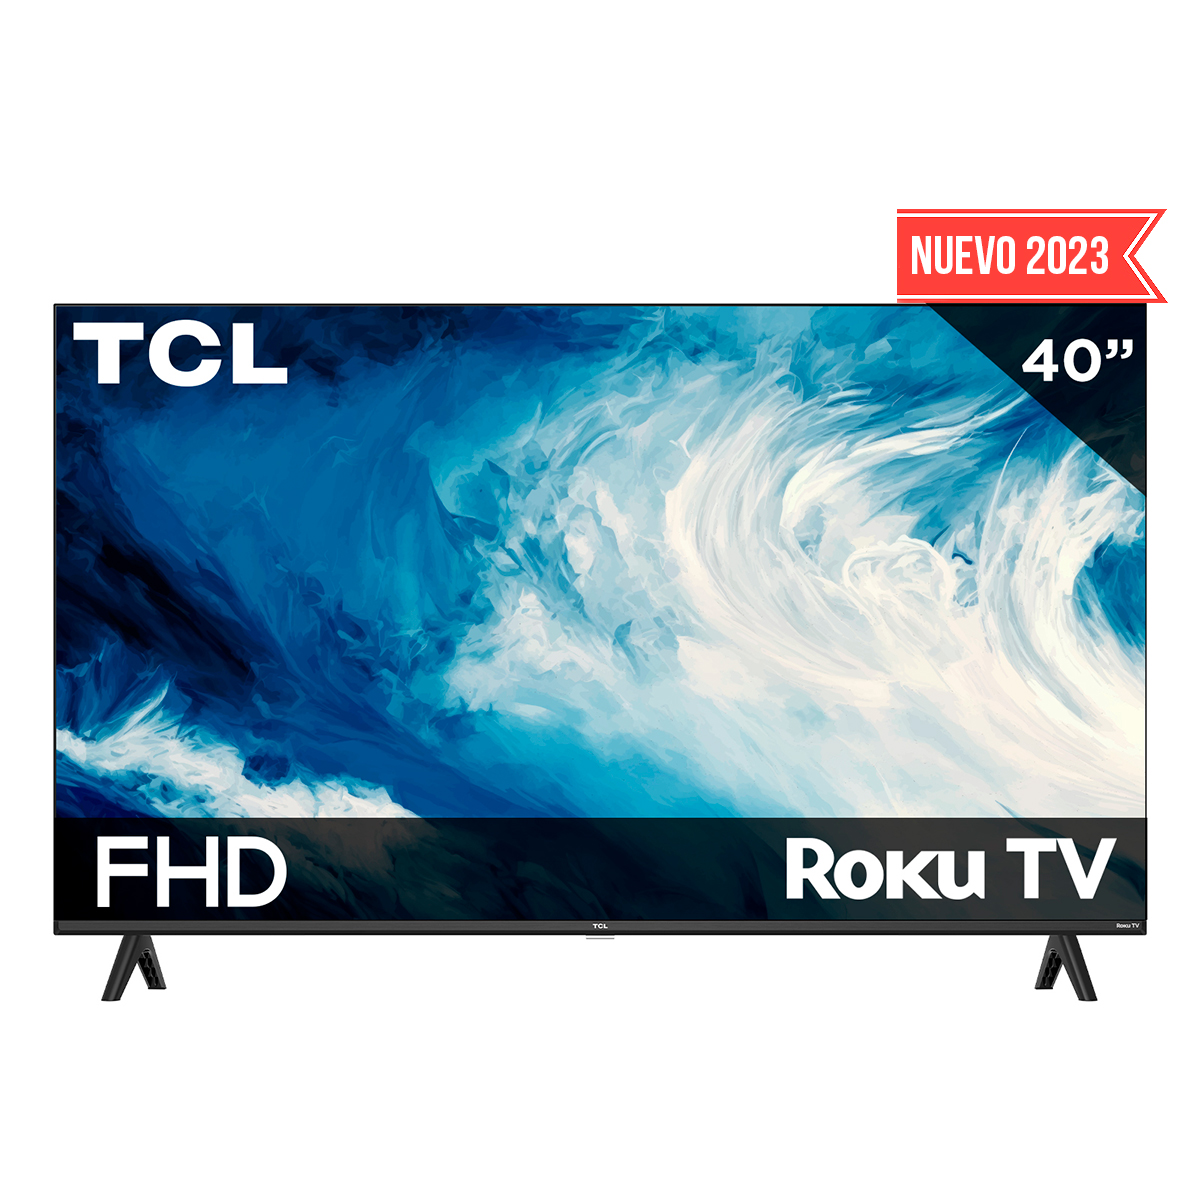 Pantalla TCL 40 FHD 2K Roku TV 40S310R Smart TV